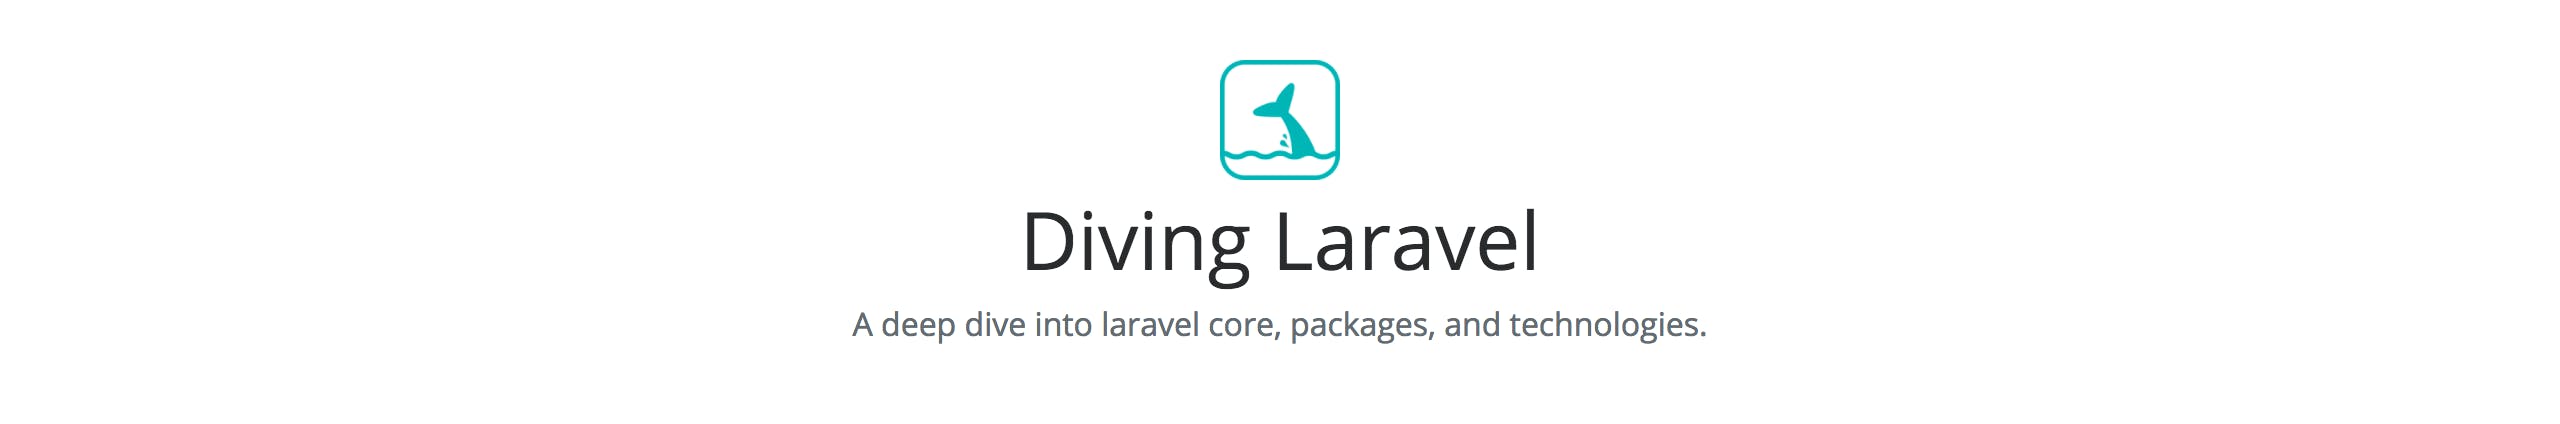 Diving Laravel media 2